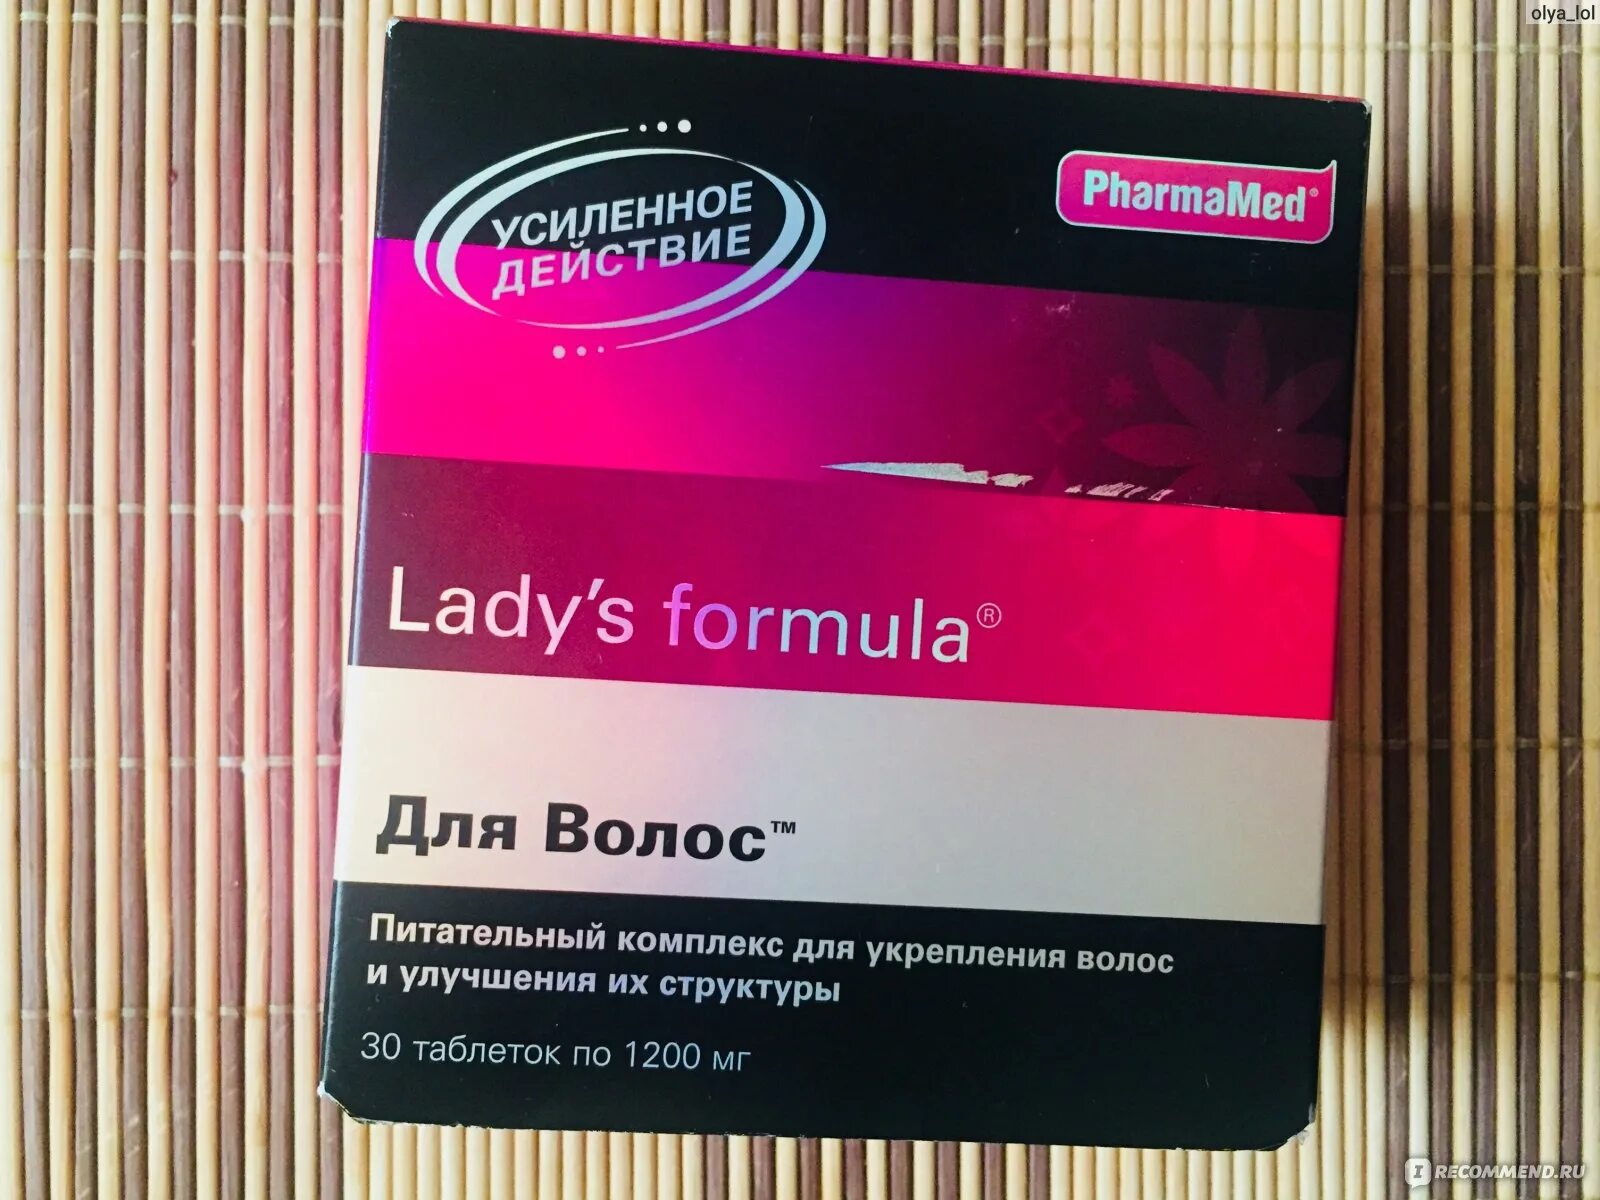 Сайт фармамед спб. Витамины ледис формула для волос. Lady's Formula (ледис формула). Ледис формула усиленная формула для волос ногтей. Lady Formula витамины для волос.